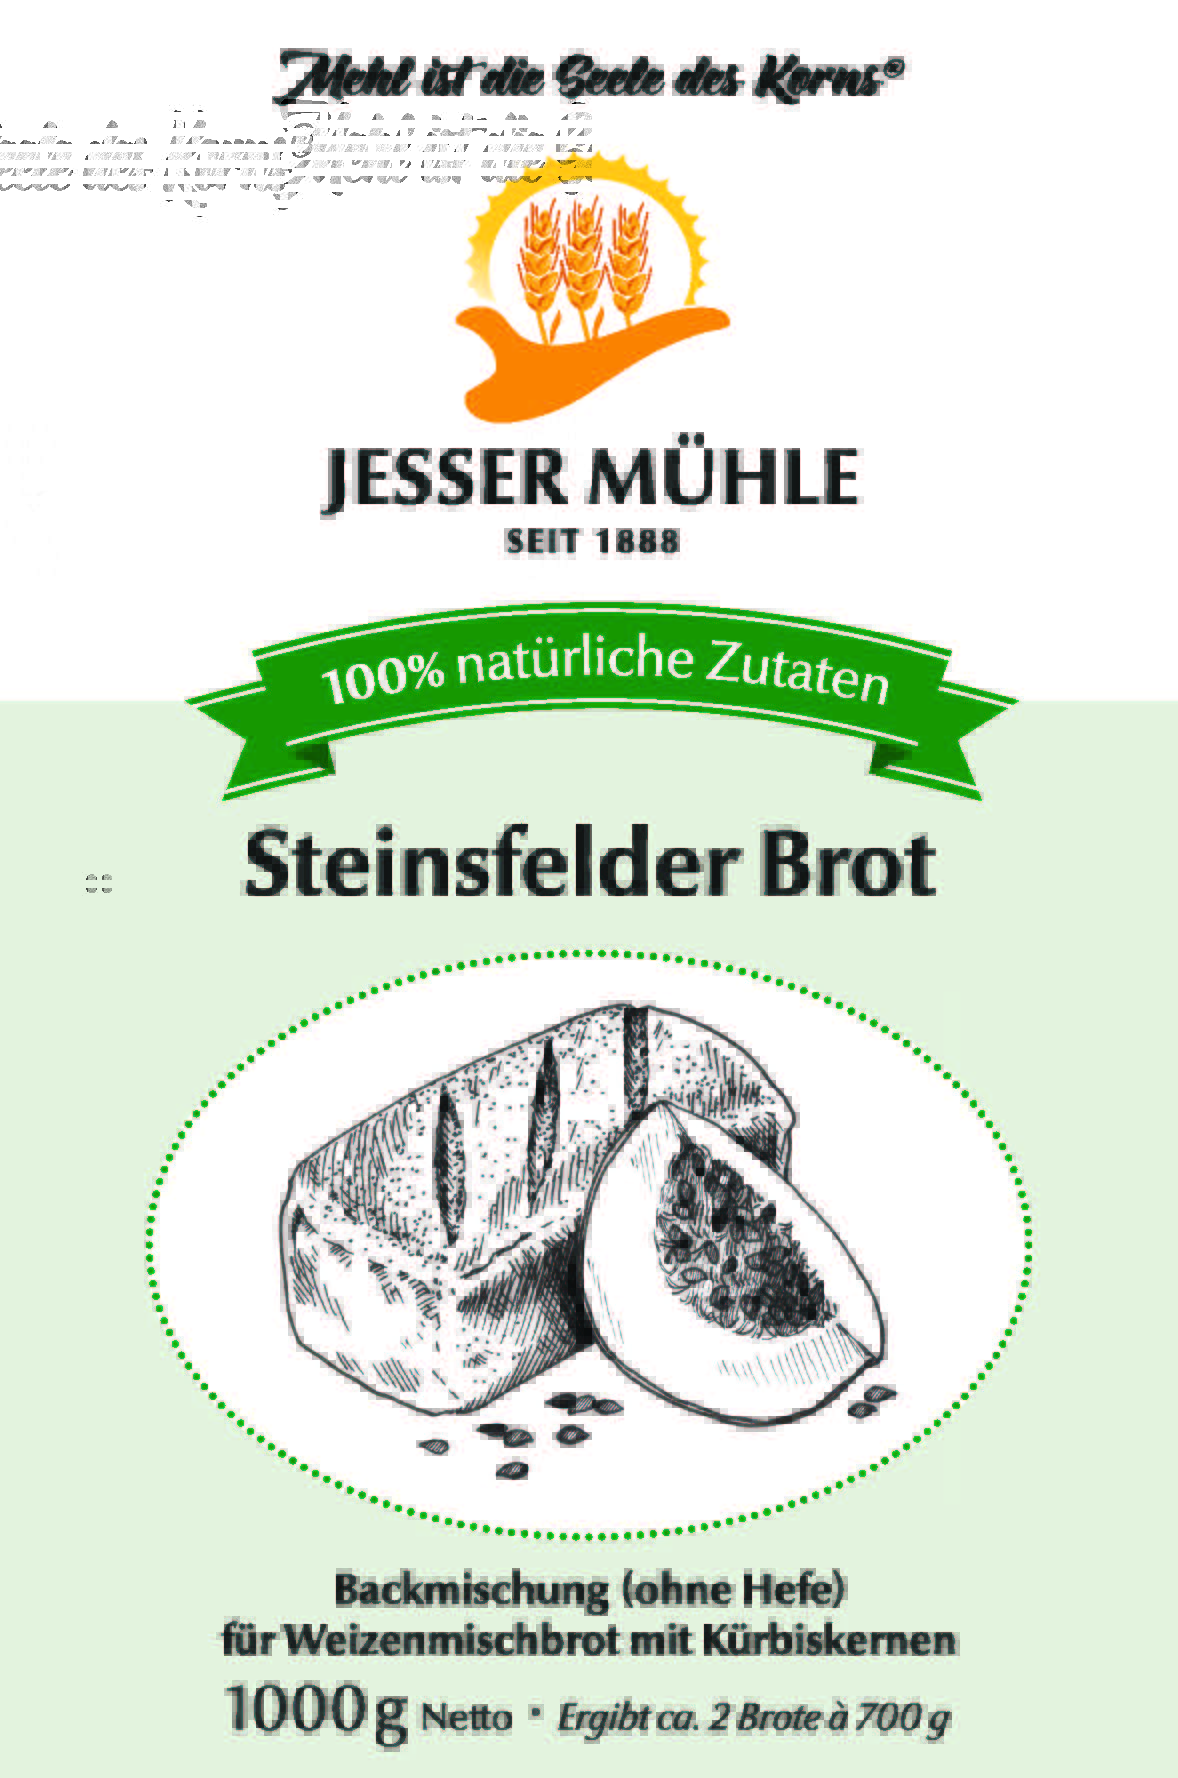 Jesser Mühle Backmischung Steinsfelder Brot